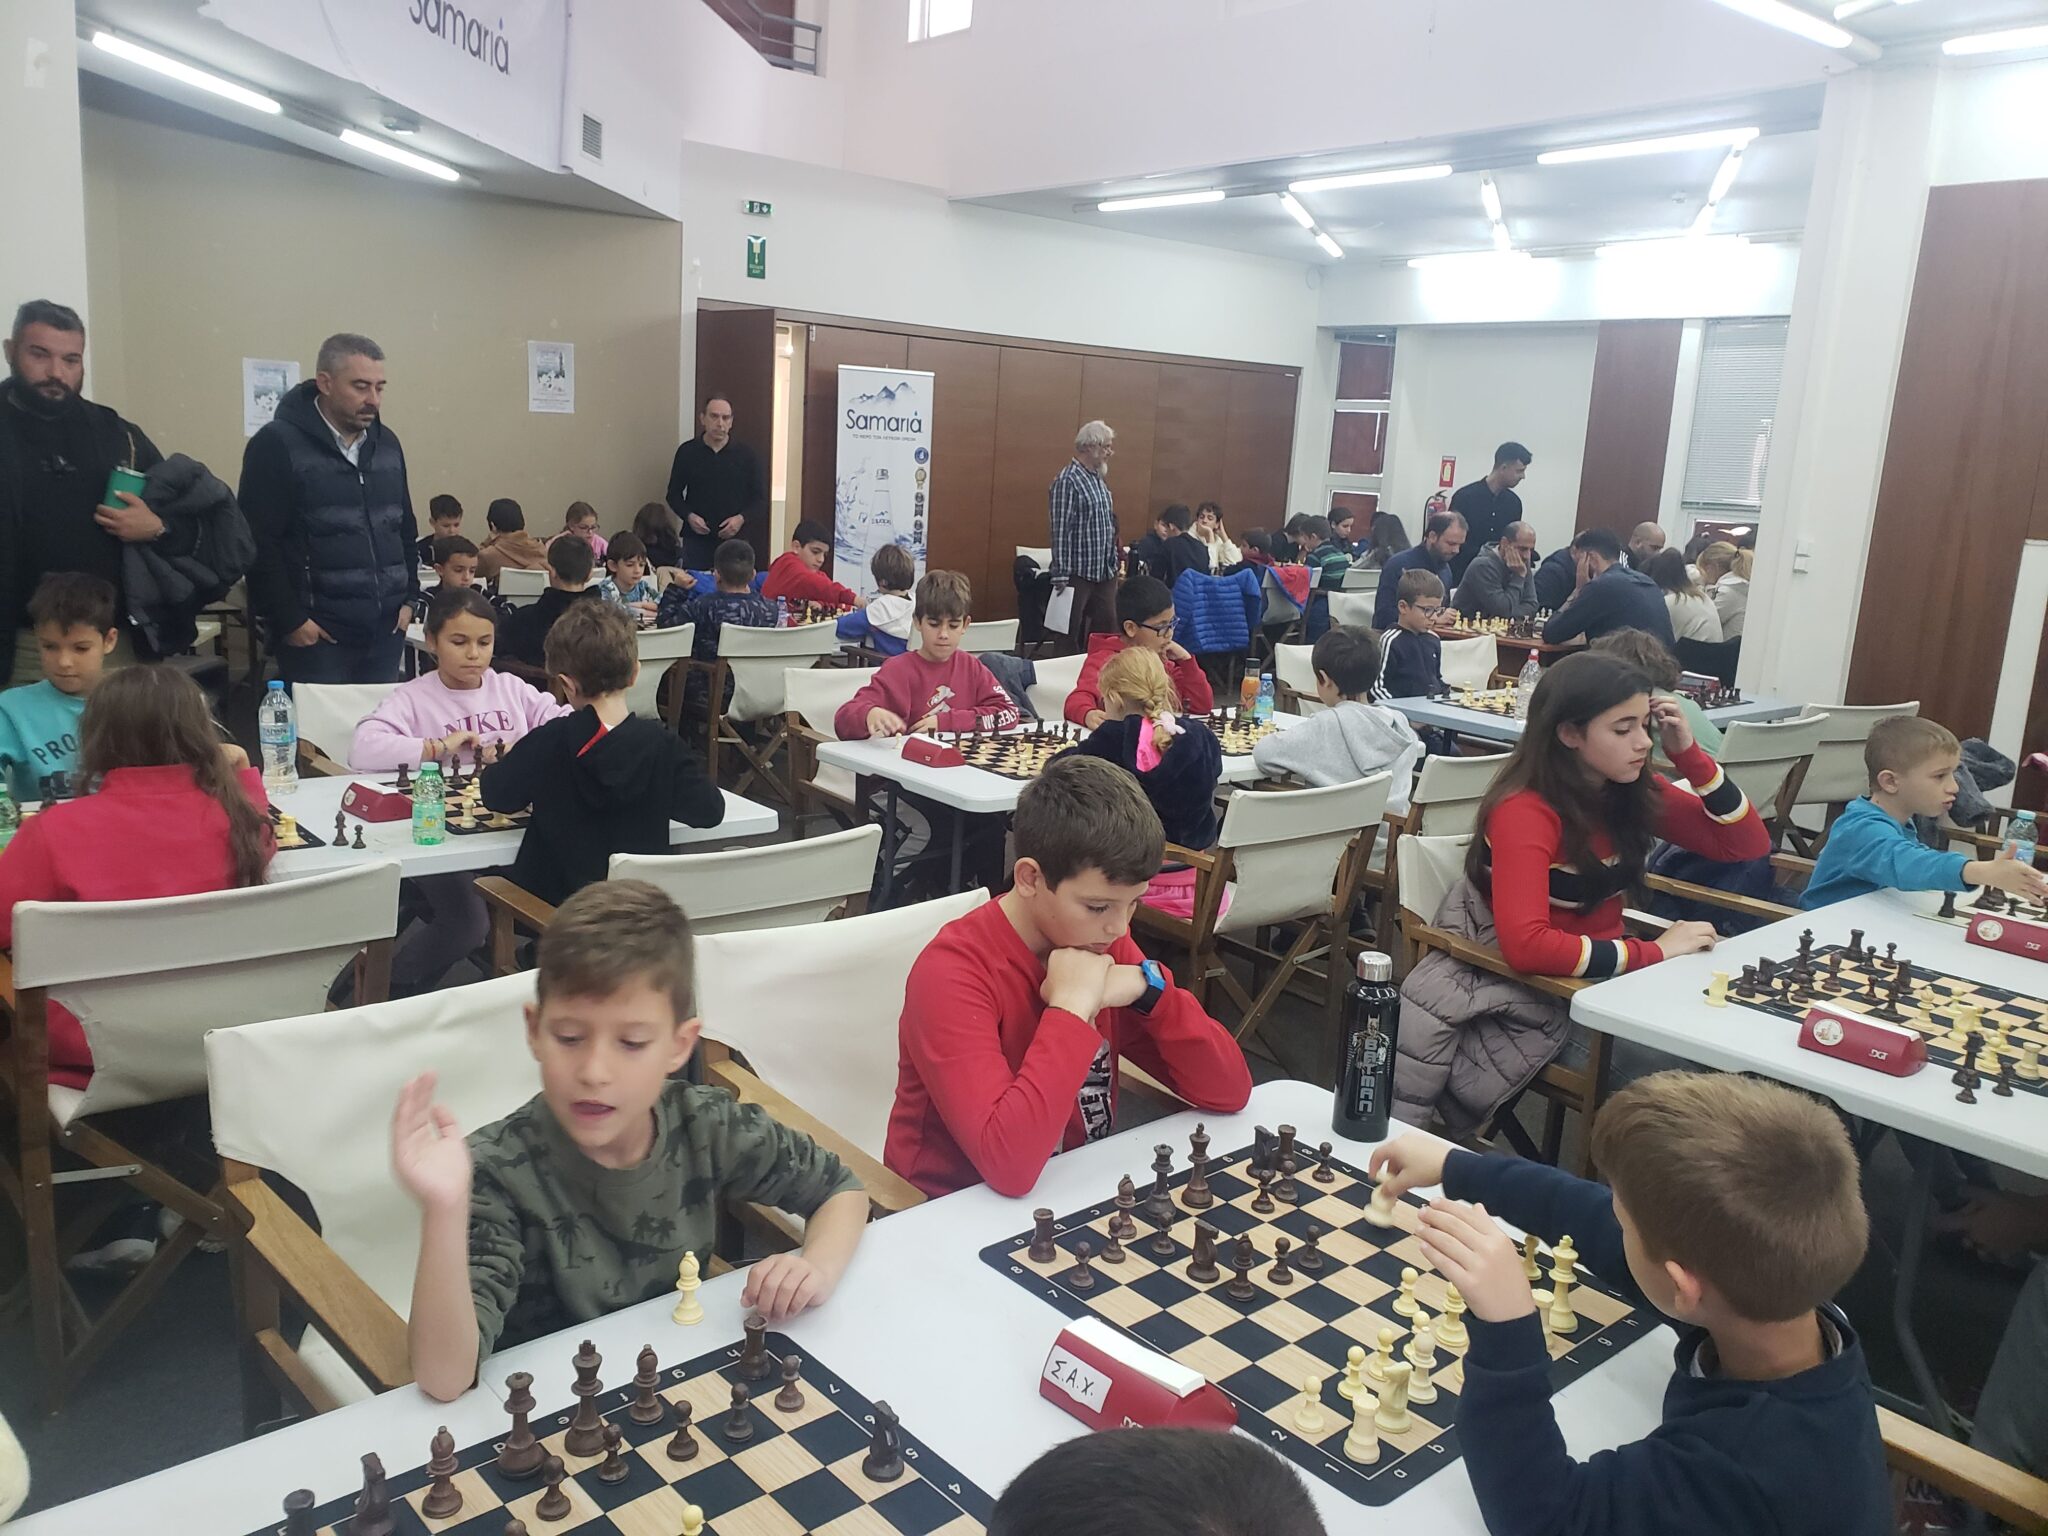 Χανιά. Ανοικτό Σκακιστικό Πρωτάθλημα Αλληλεγγύης για τα παιδιά της ΕΛΕΠΑΠ